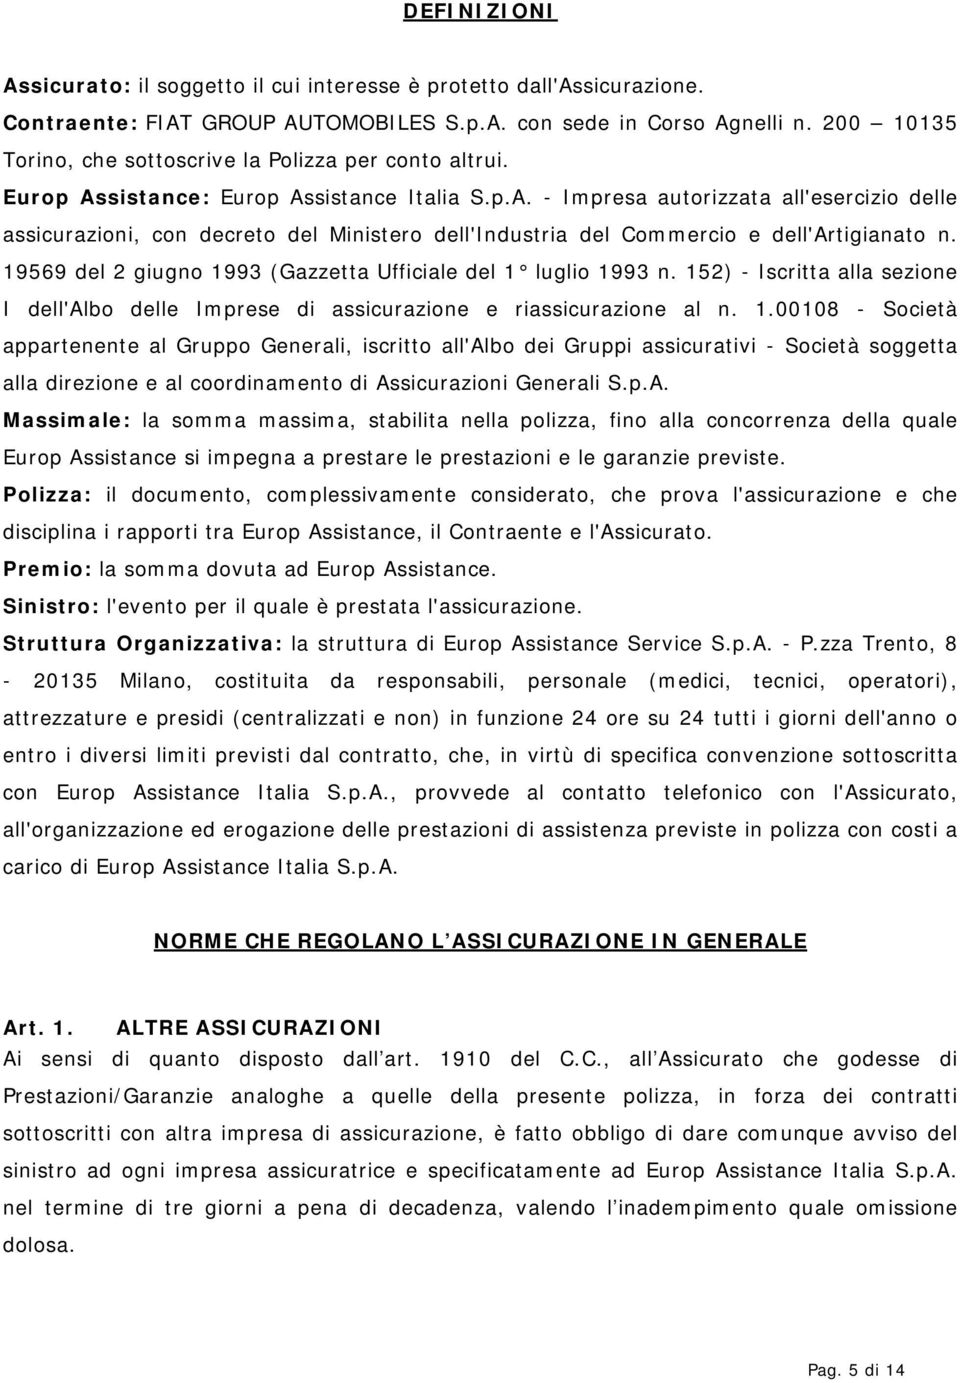 sistance: Europ Assistance Italia S.p.A. - Impresa autorizzata all'esercizio delle assicurazioni, con decreto del Ministero dell'industria del Commercio e dell'artigianato n.